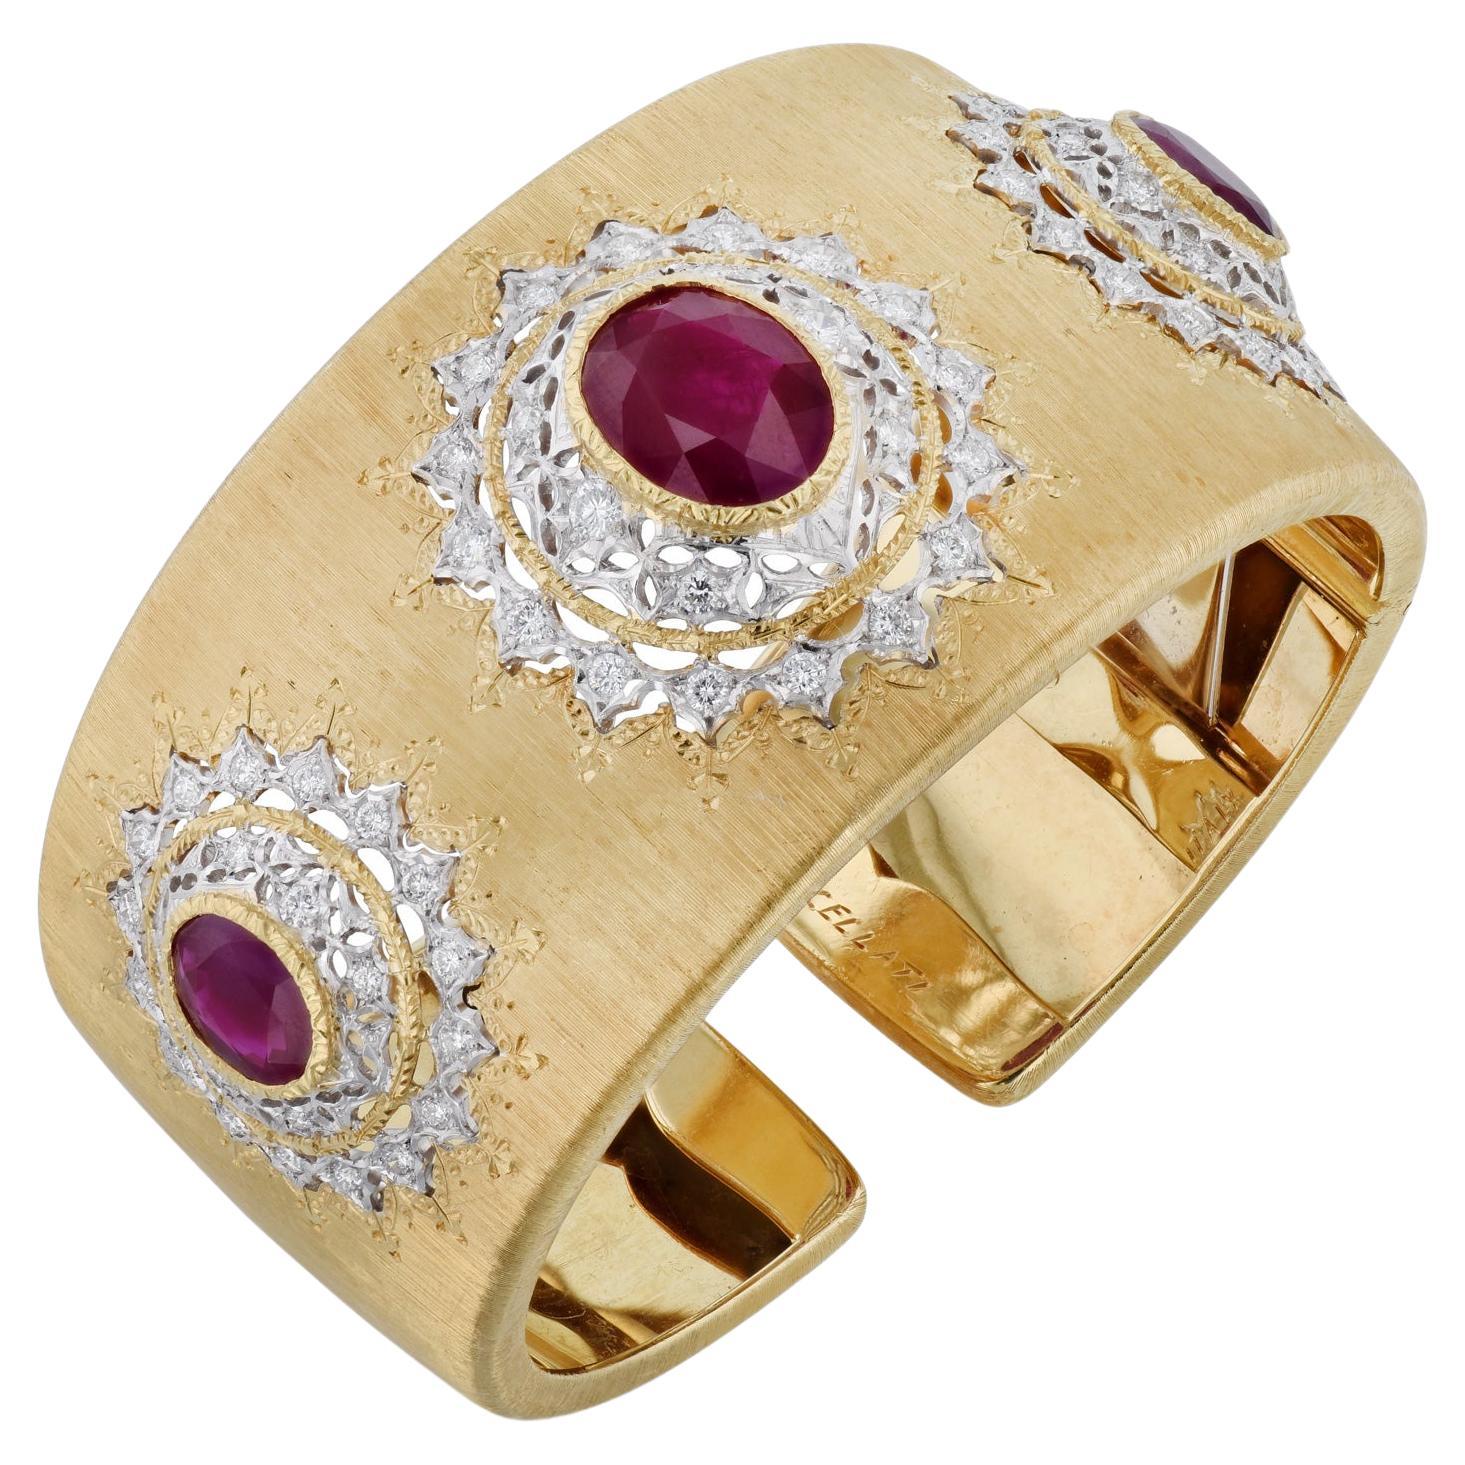 Buccellati, manchette large avec rubis de Birmanie de 9,5 carats et diamants certifiés GIA 